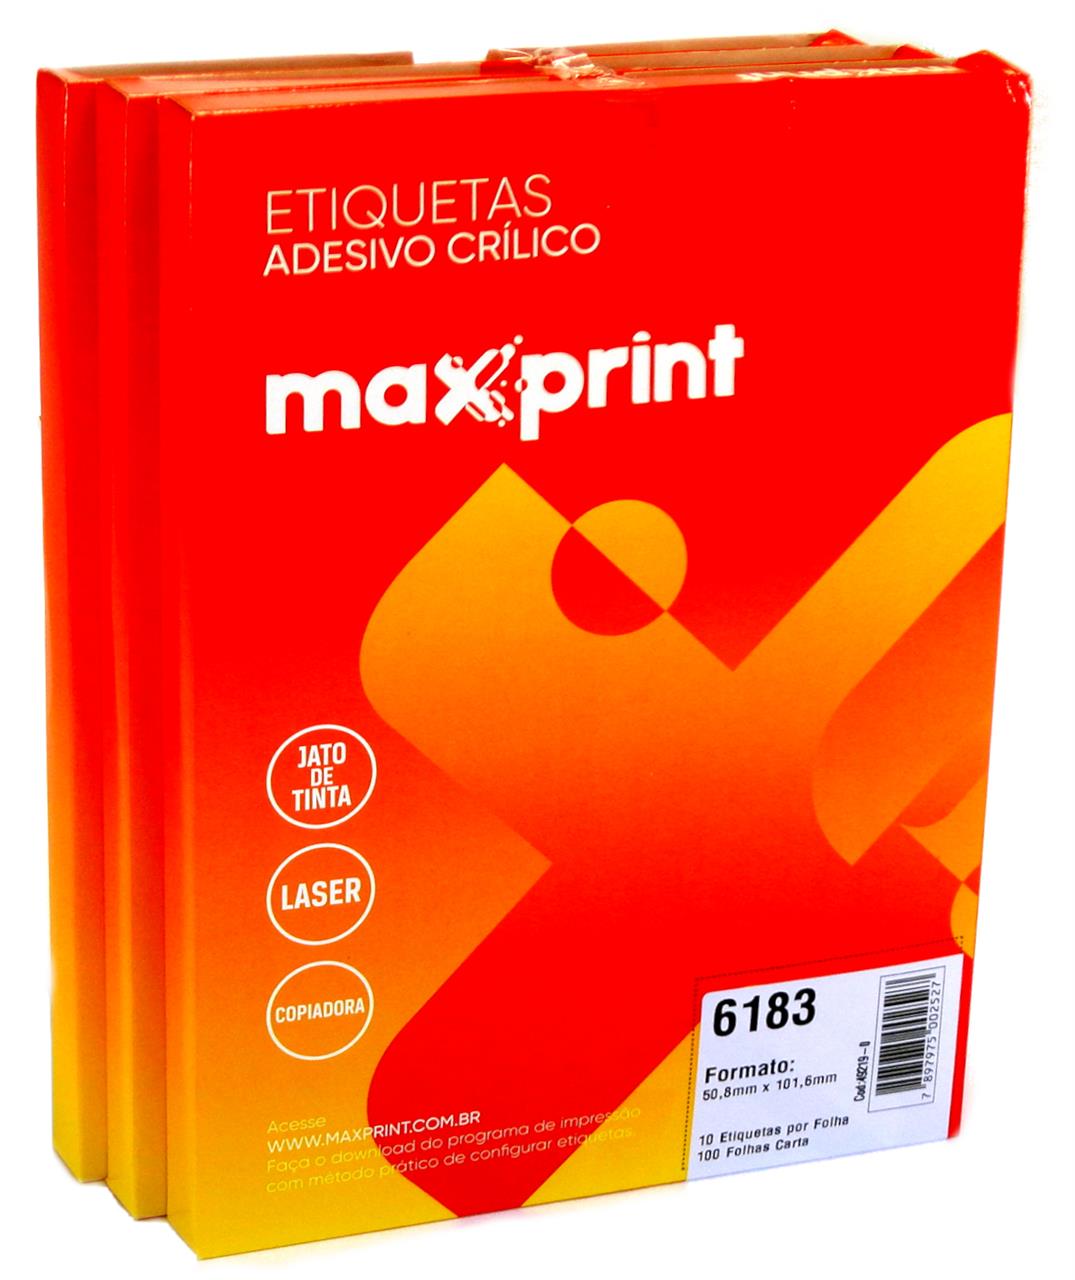 Folha Medindo 215,9mm x 279,4mm - Etiquetas 6183 50,8mm x 101,6mm no Pack com 3 Caixas Maxprint